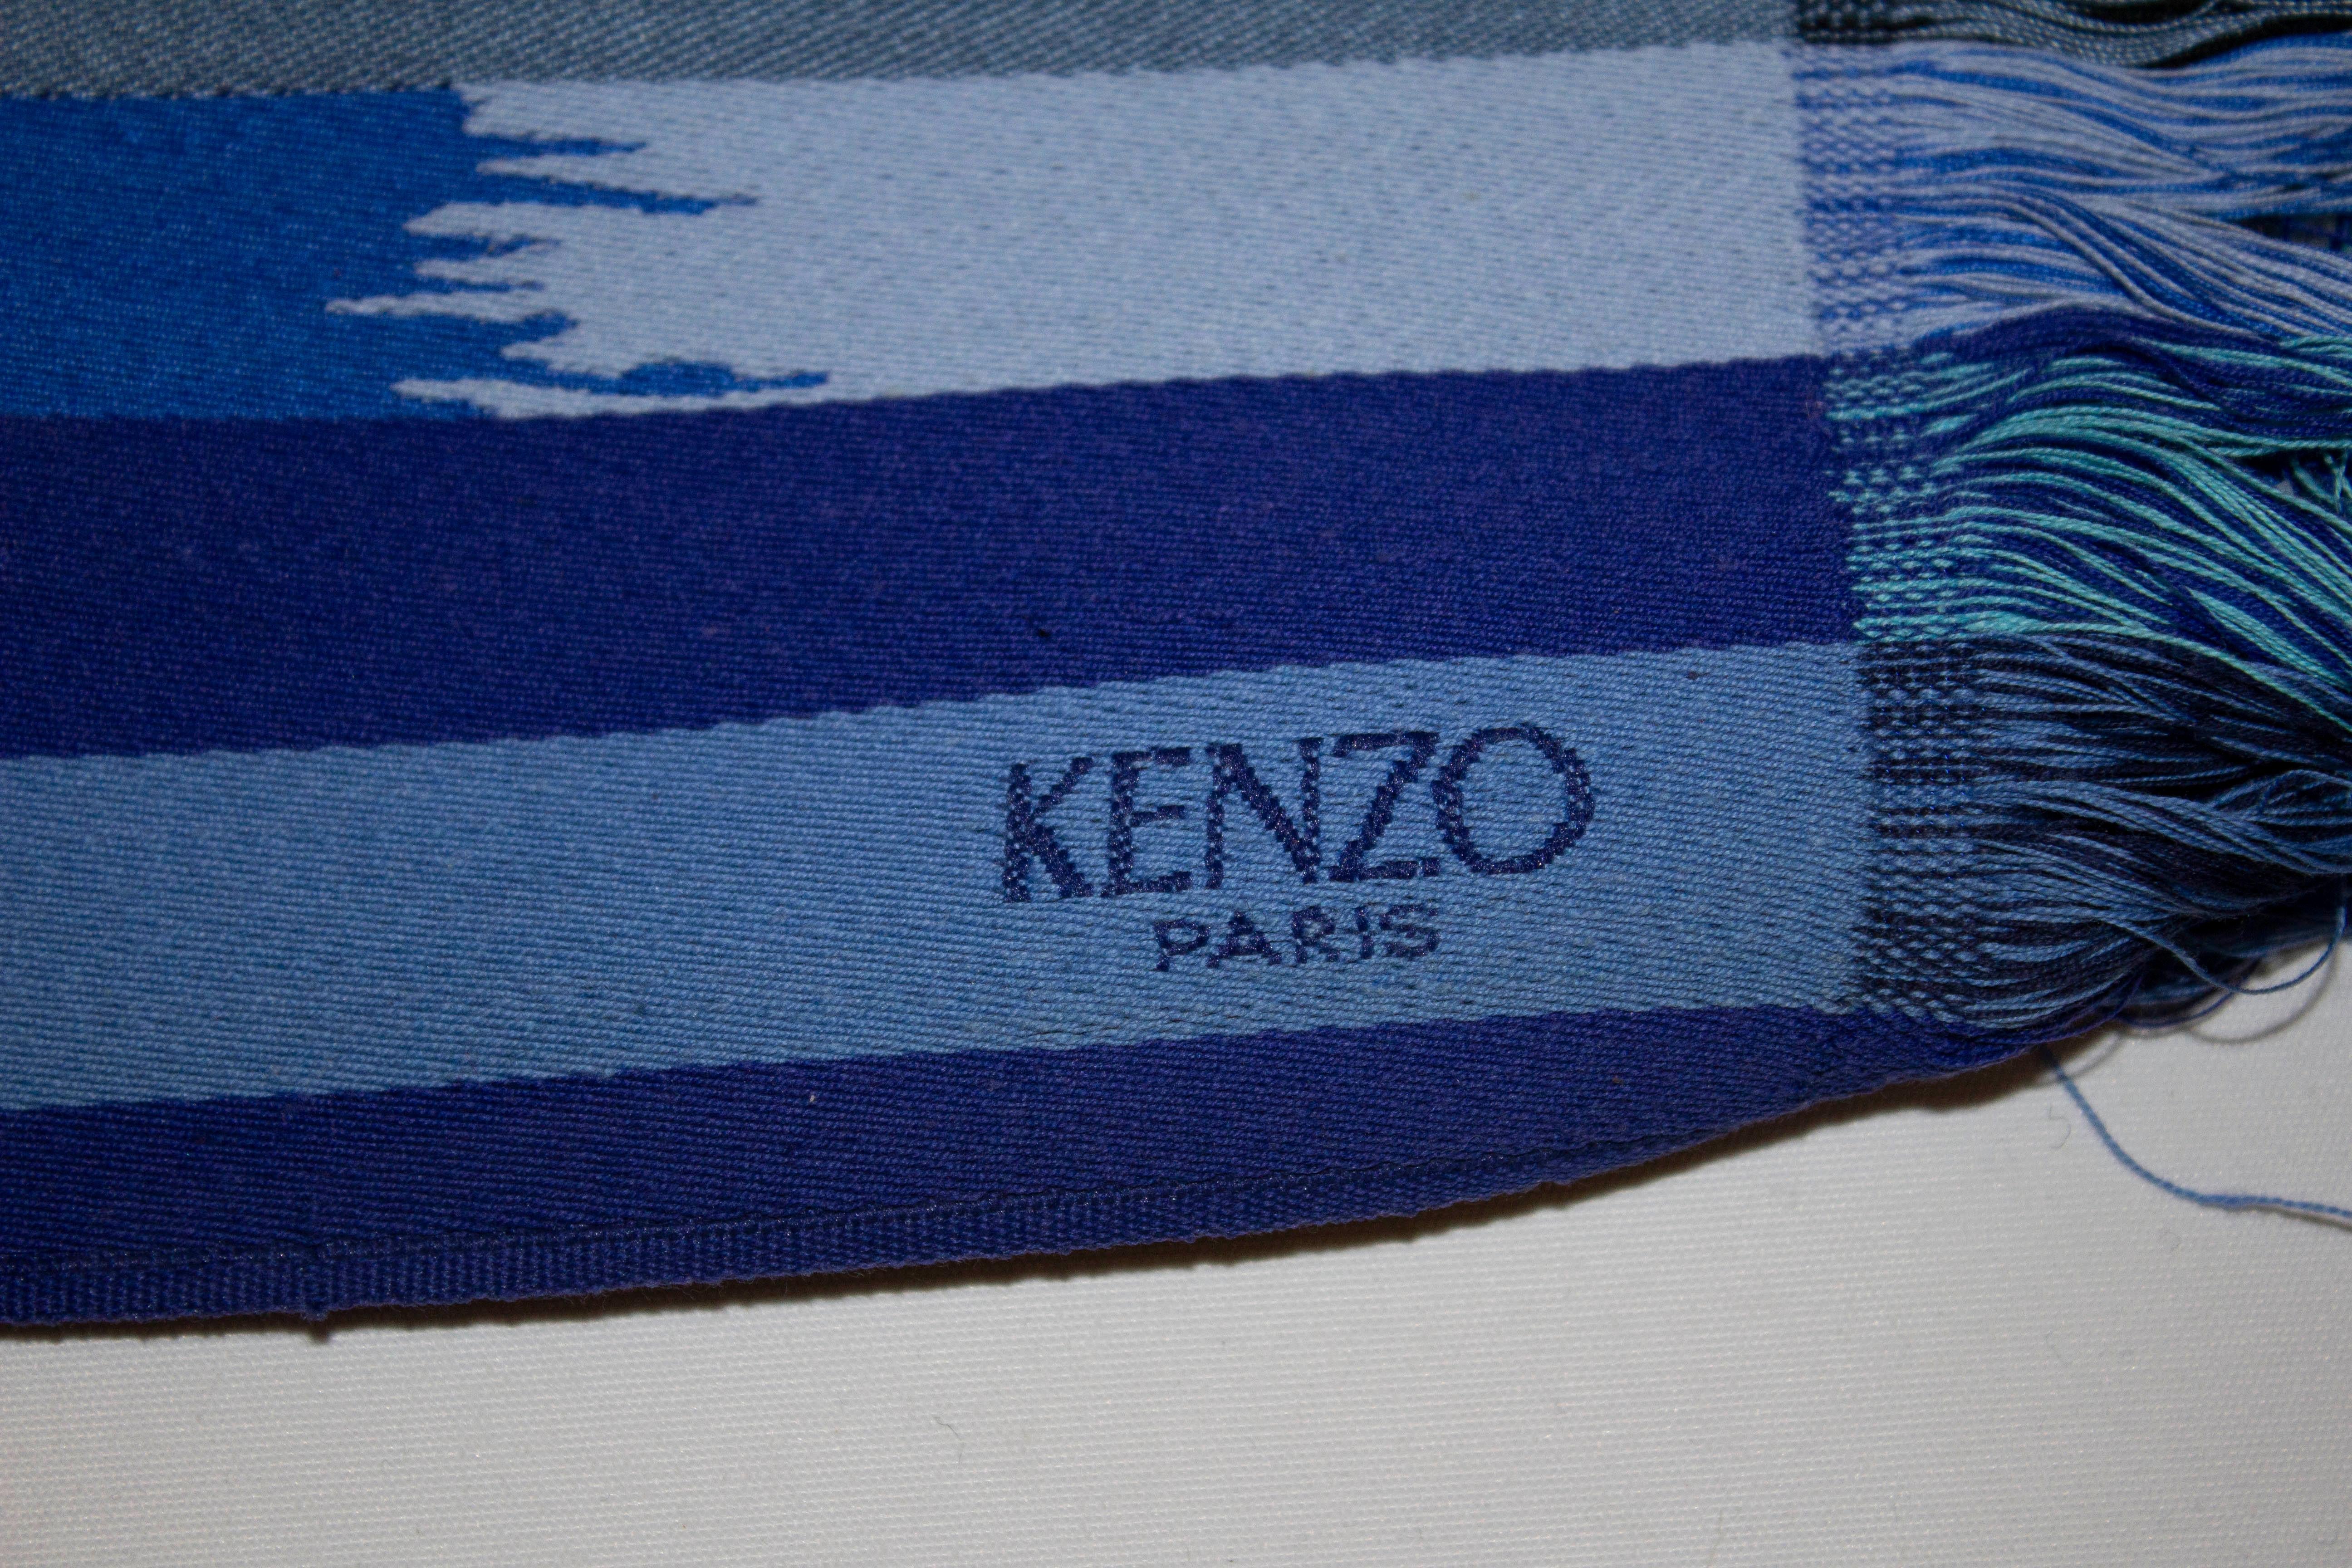 Une grande ceinture pour le printemps / été par Kenzo Paris. Cette ceinture de style obi est dans un miz à rayures bleues avec des détails à franges. Mesures : Hauteur 4 1/2'', longueur 76'' sans la frange.